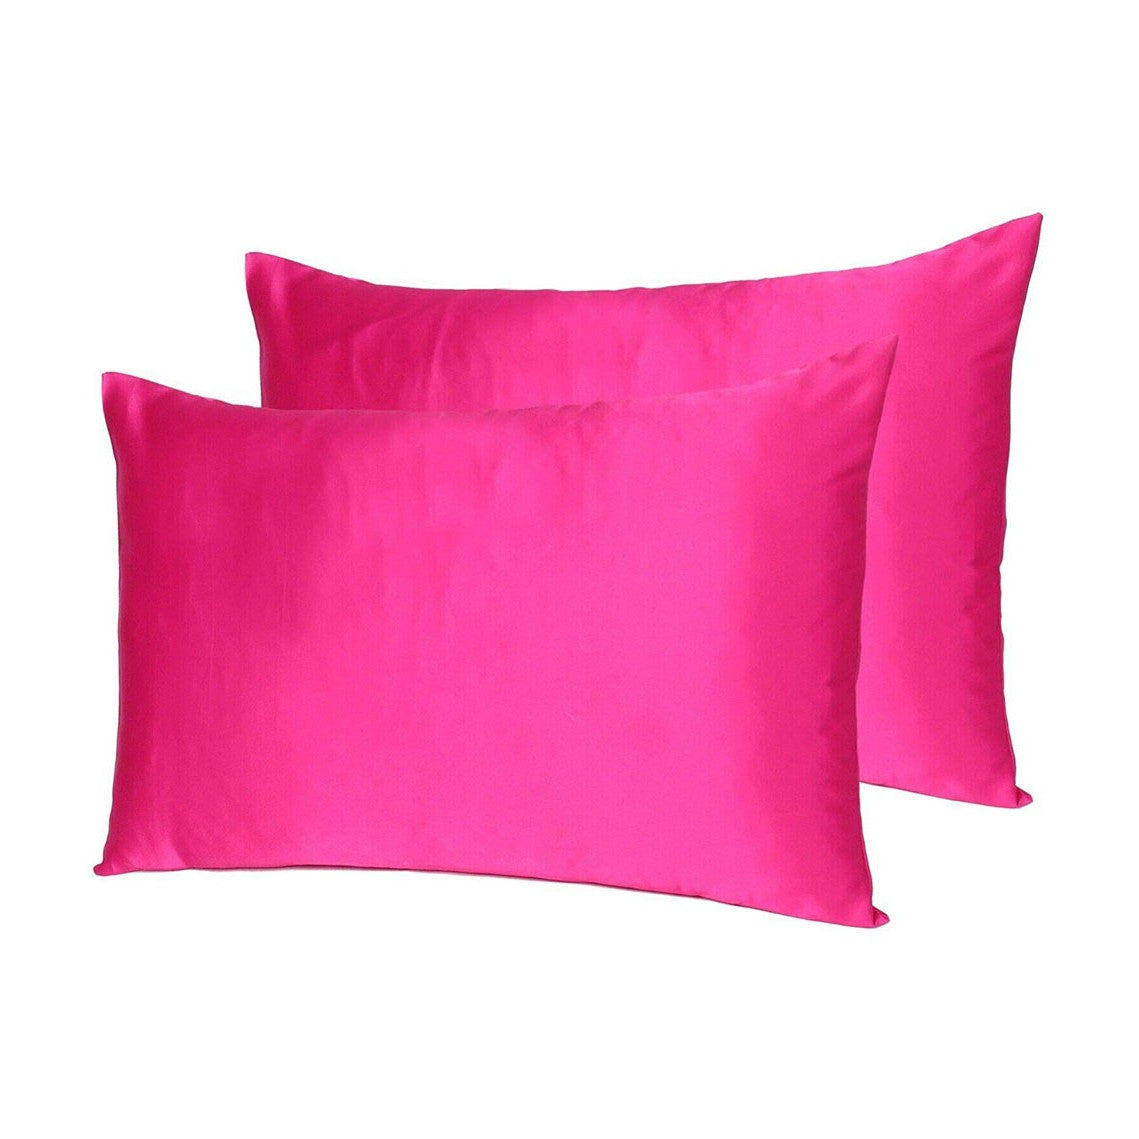 Fuchsia Dreamy Set Of 2 Silky Satin King Pillowcases